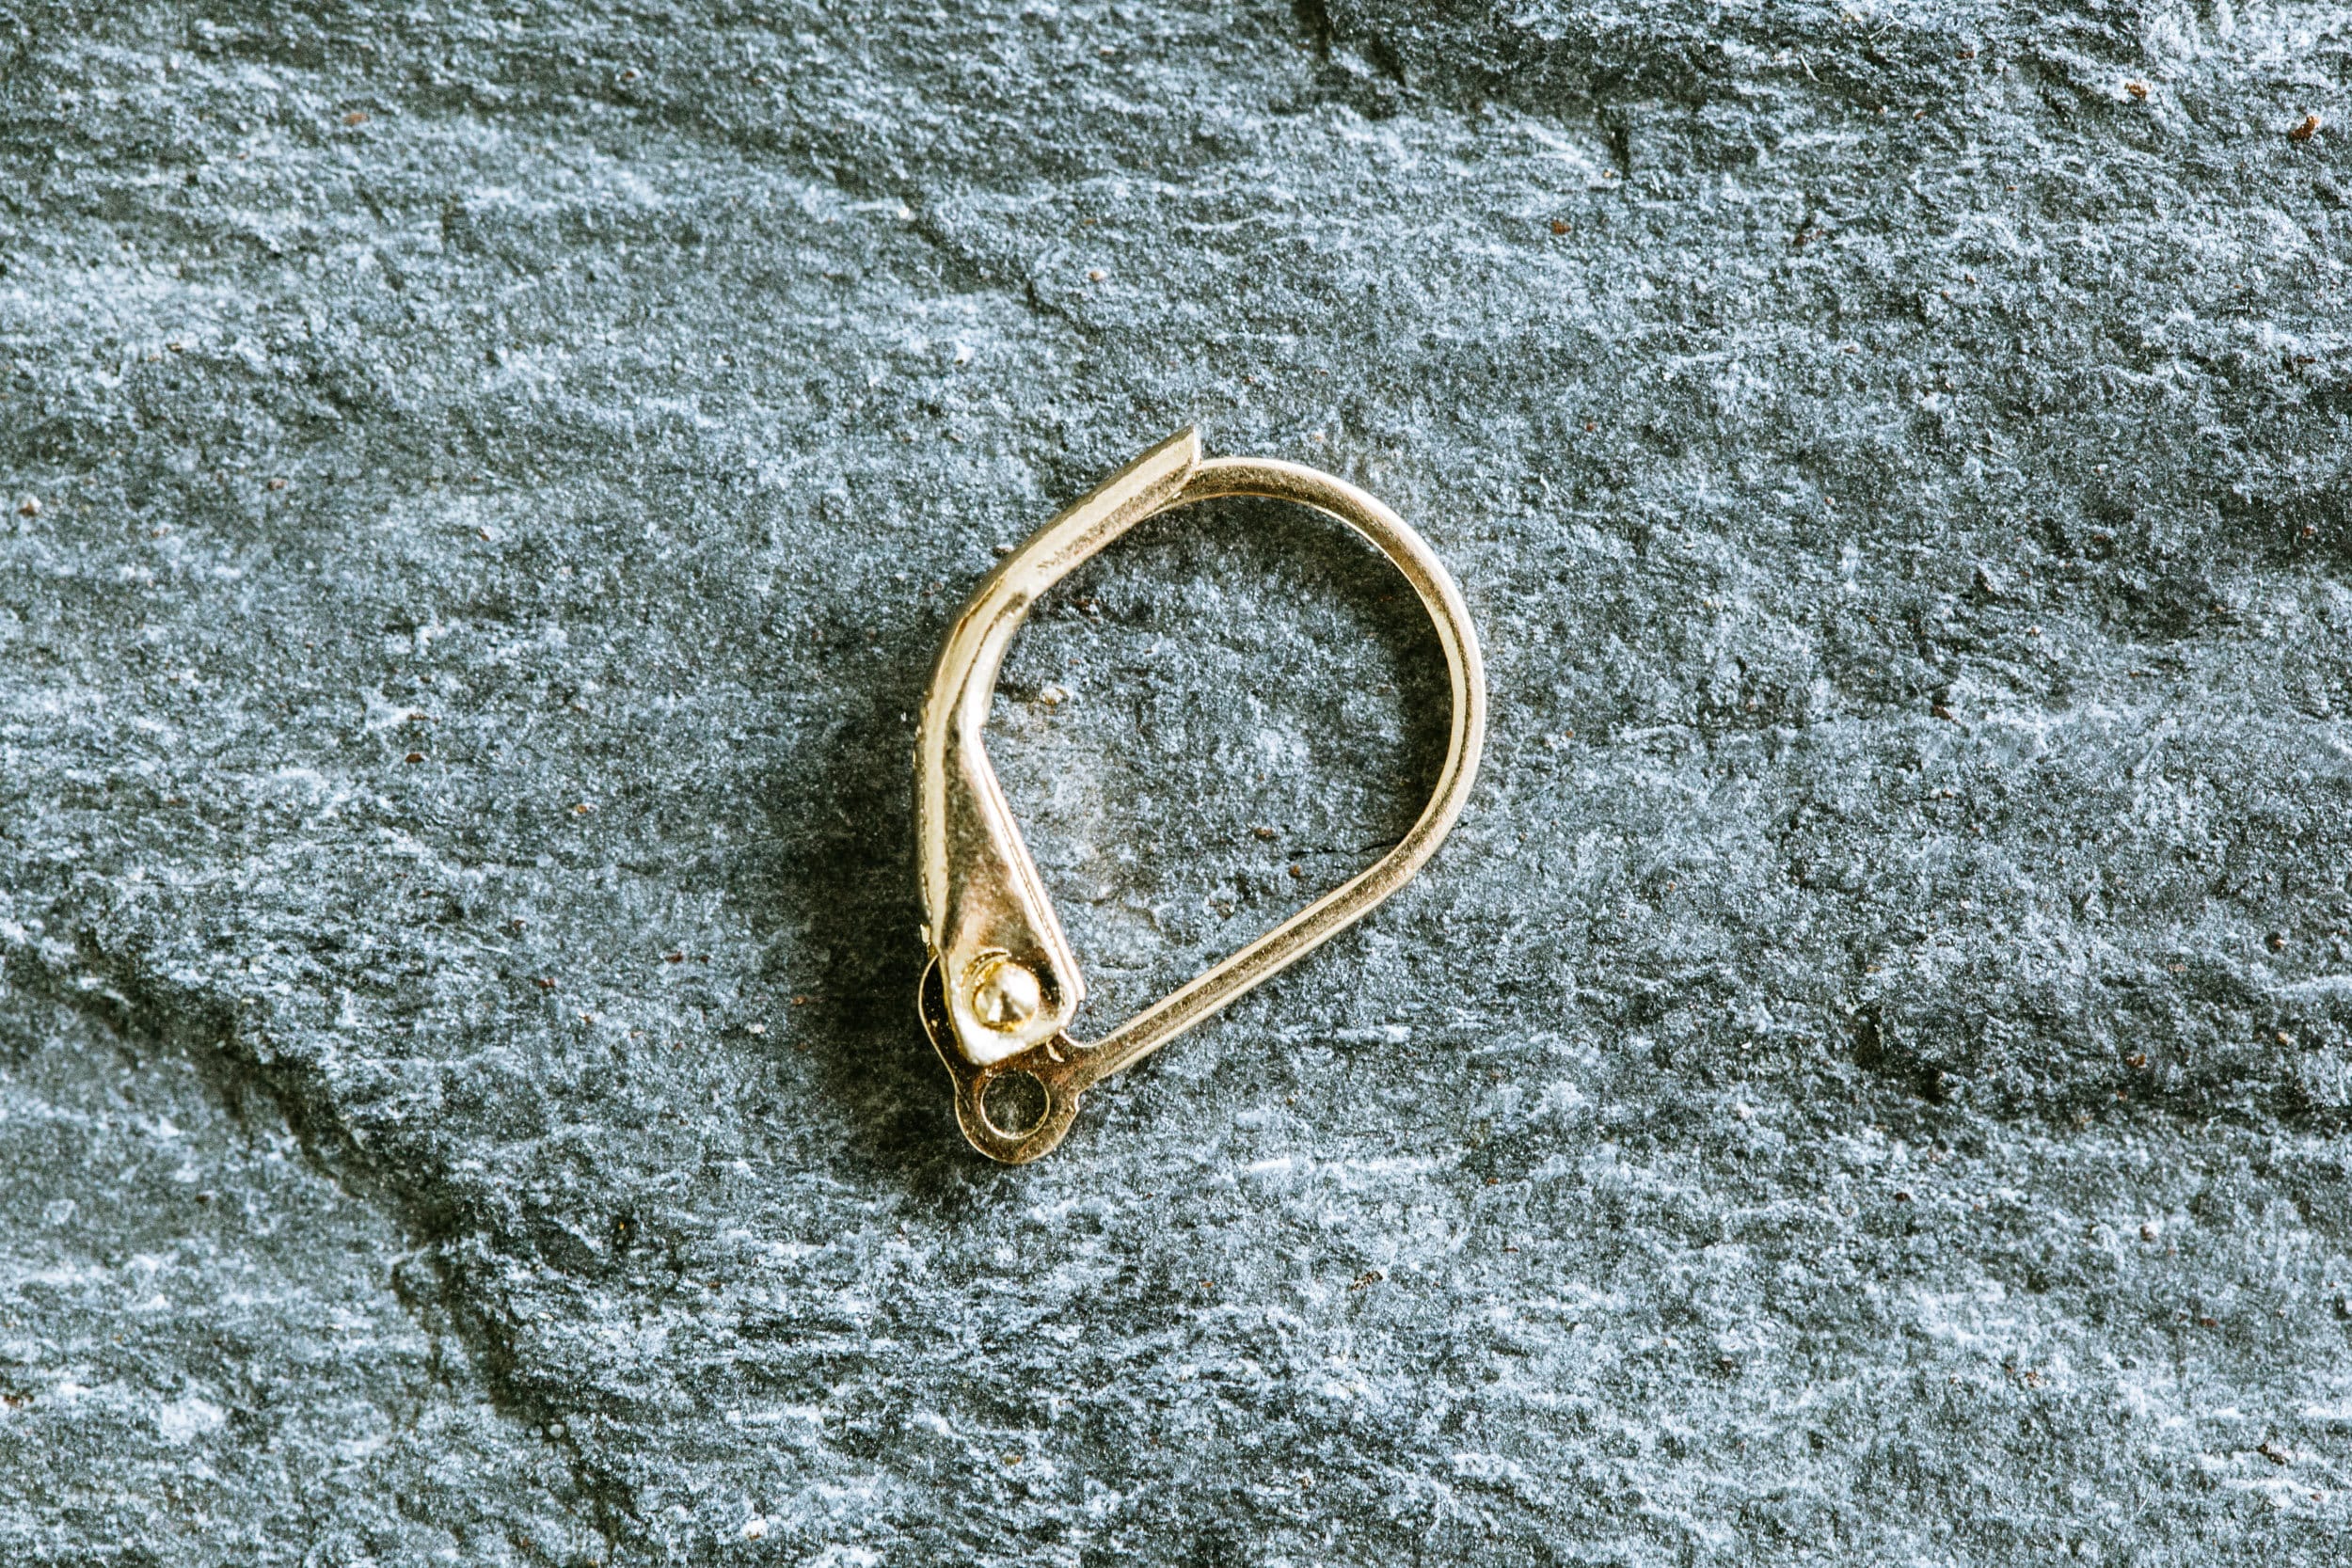 50pcs Wholesale Gold Leverback Earring Hooks Ear Wire Loops 